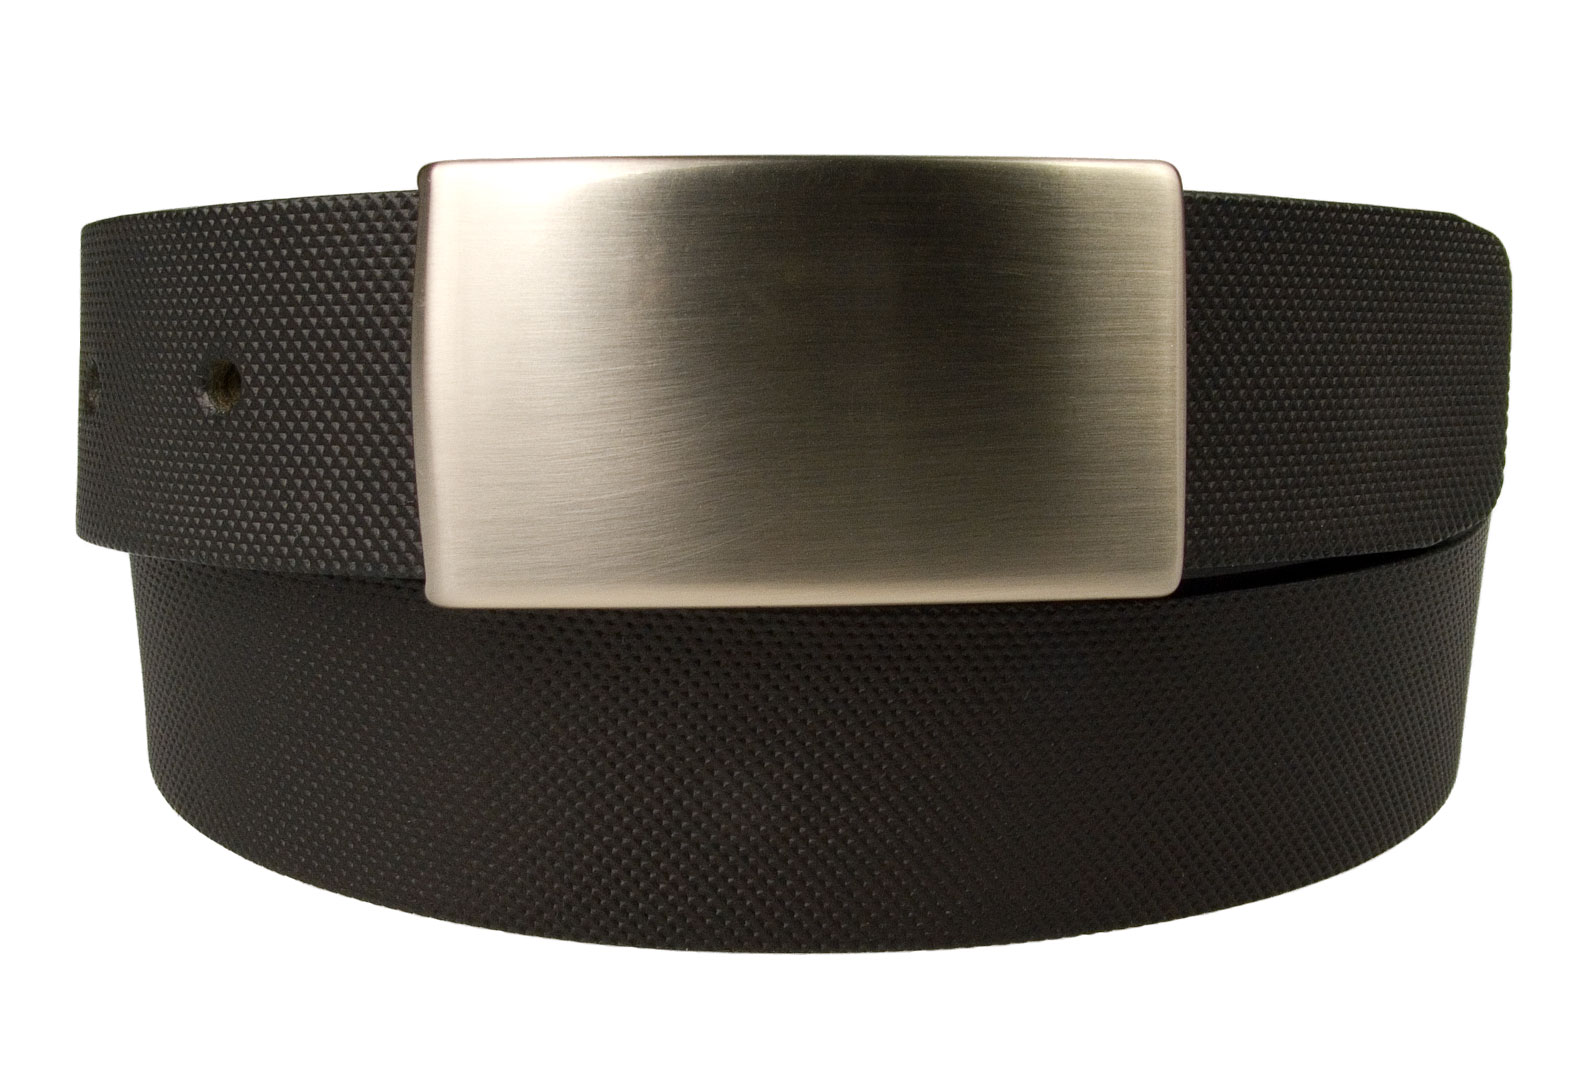 plaque buckle belt